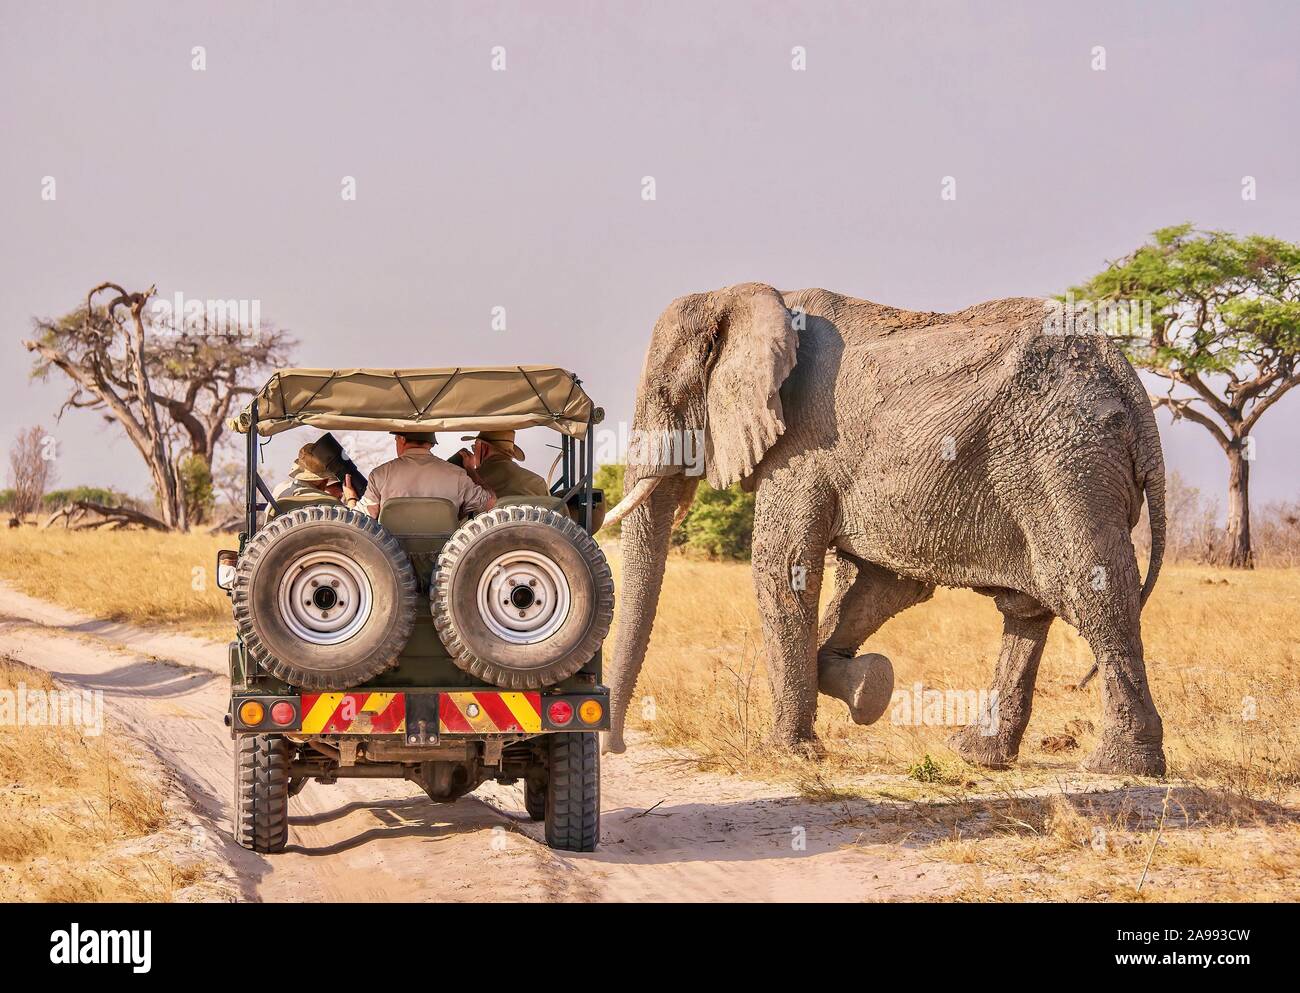 Eine enge Begegnung zwischen Mensch und Tier als männlicher afrikanischer Elefant (Loxodonta africana) mit Schlamm bedeckt, passiert vor eine Safari Fahrzeug. Stockfoto